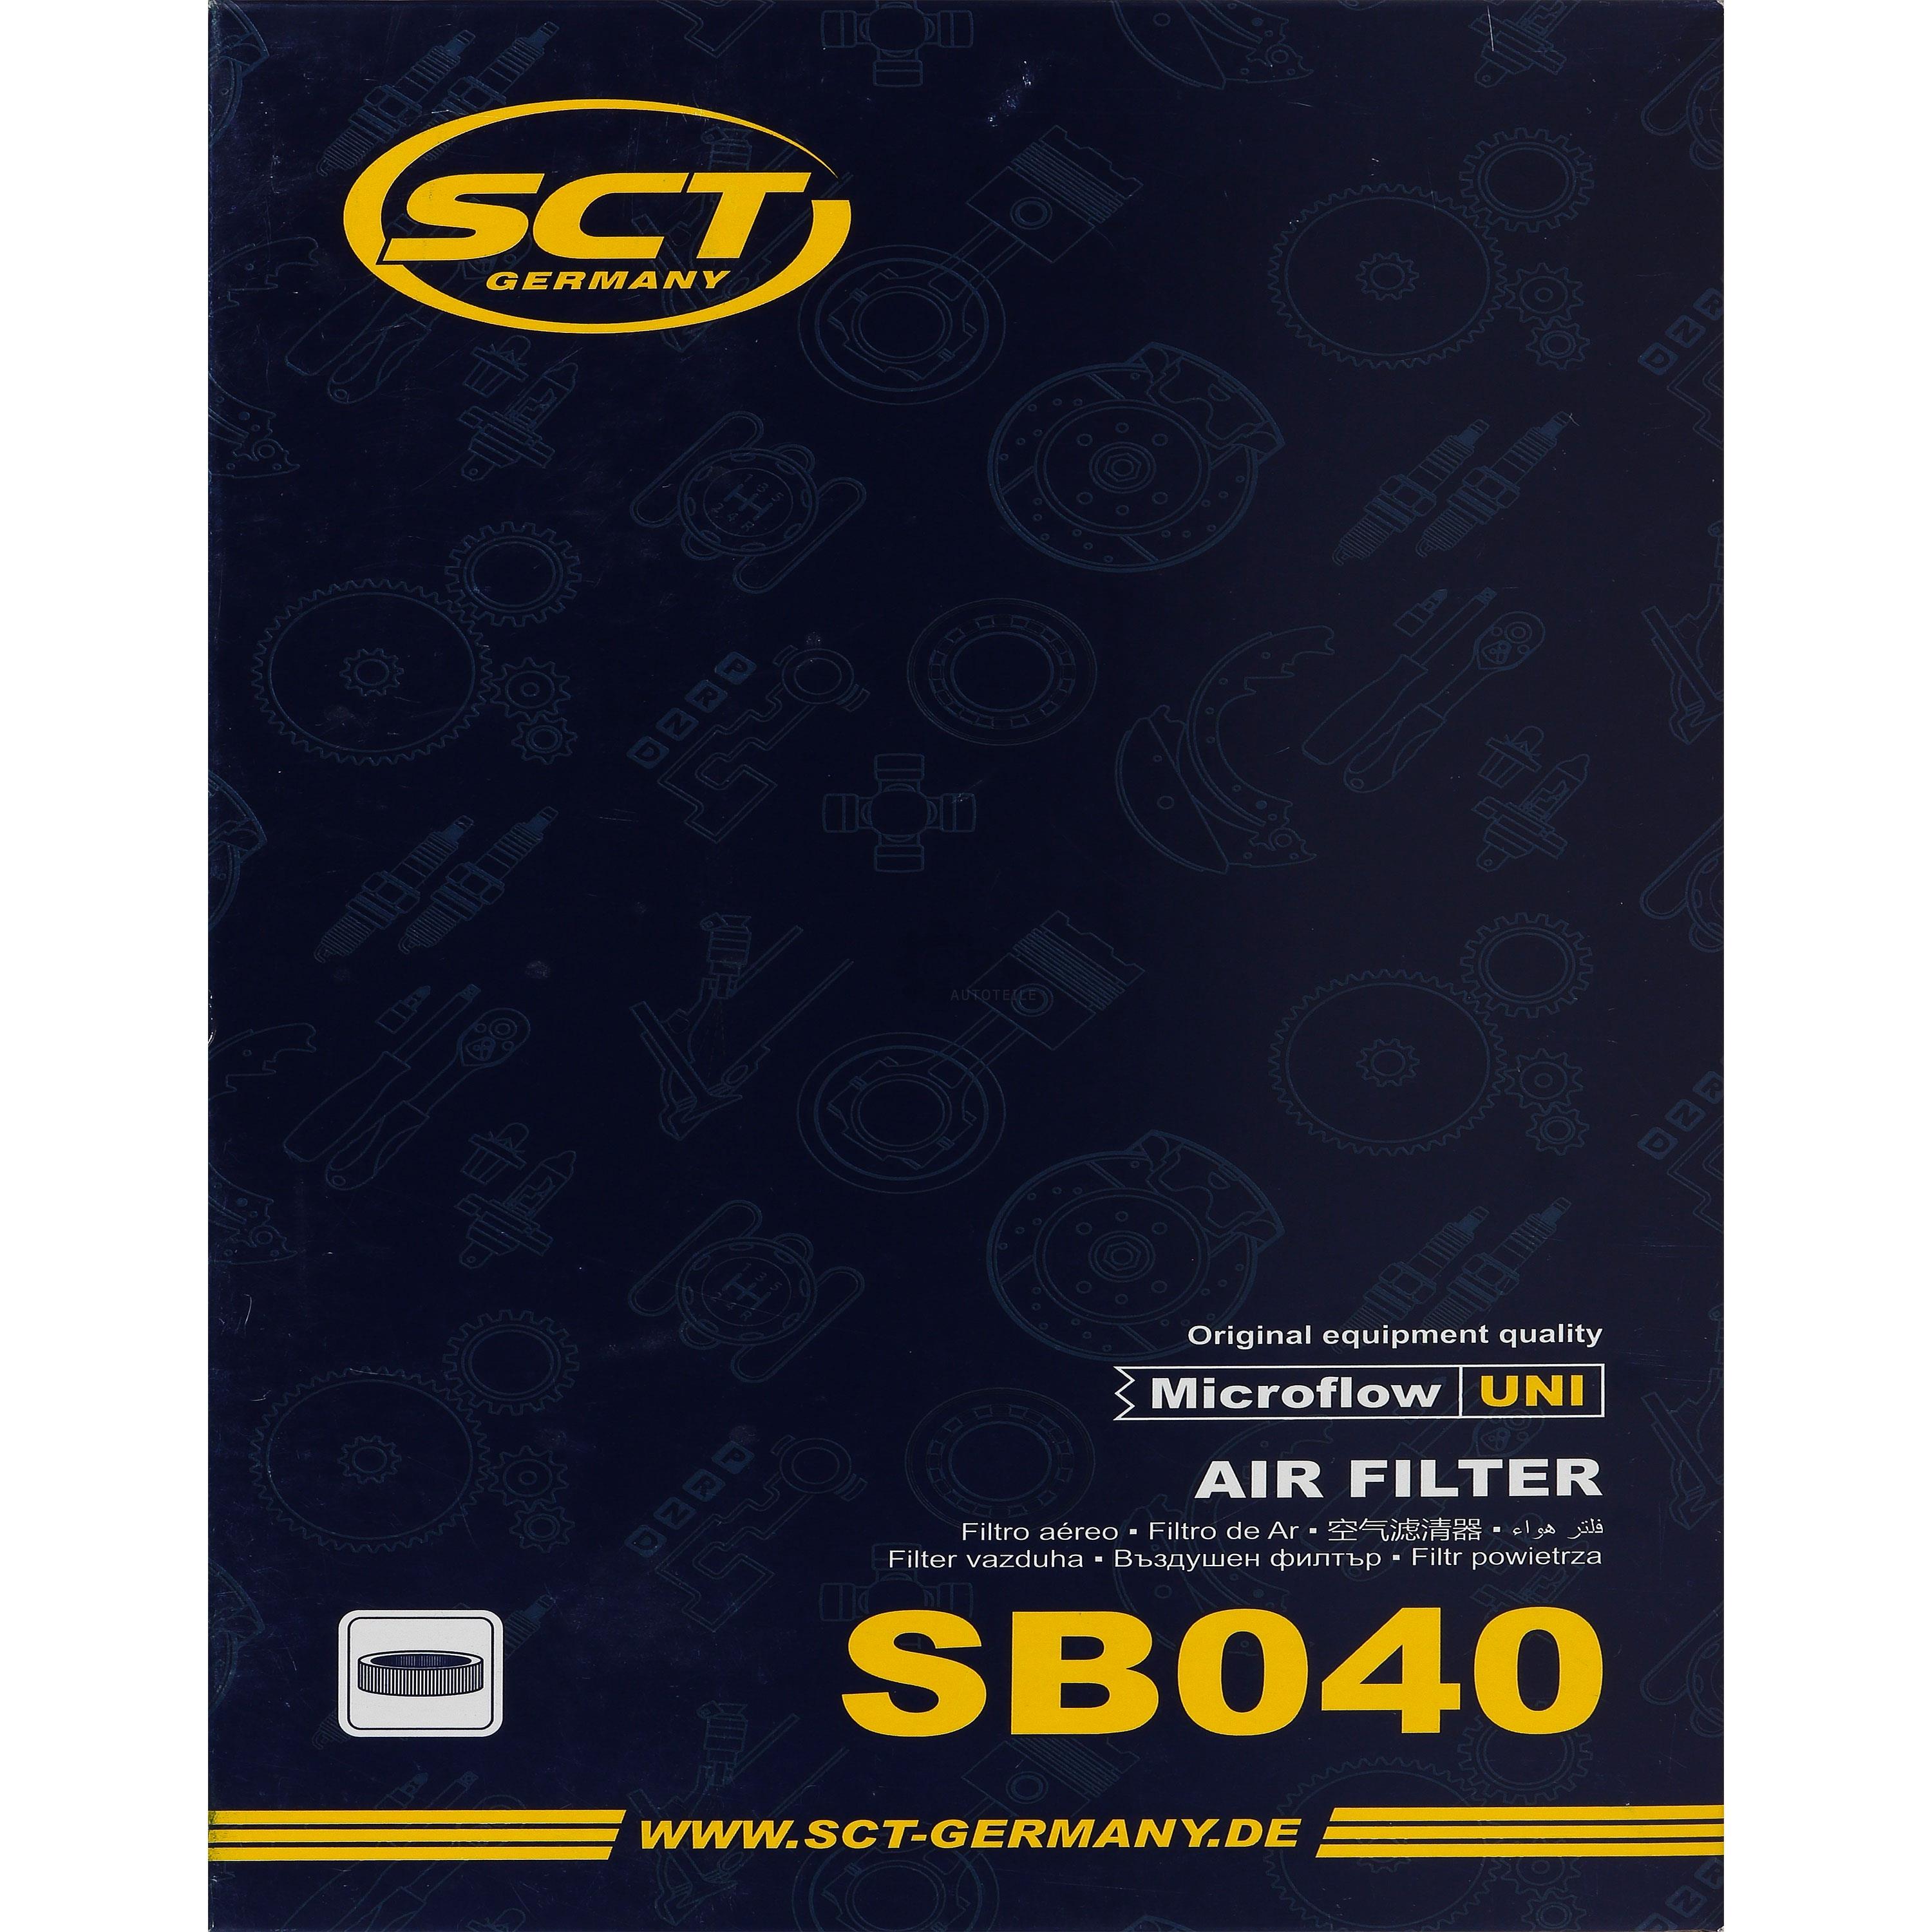 SCT Luftfilter Motorluftfilter SB 040 Air Filter